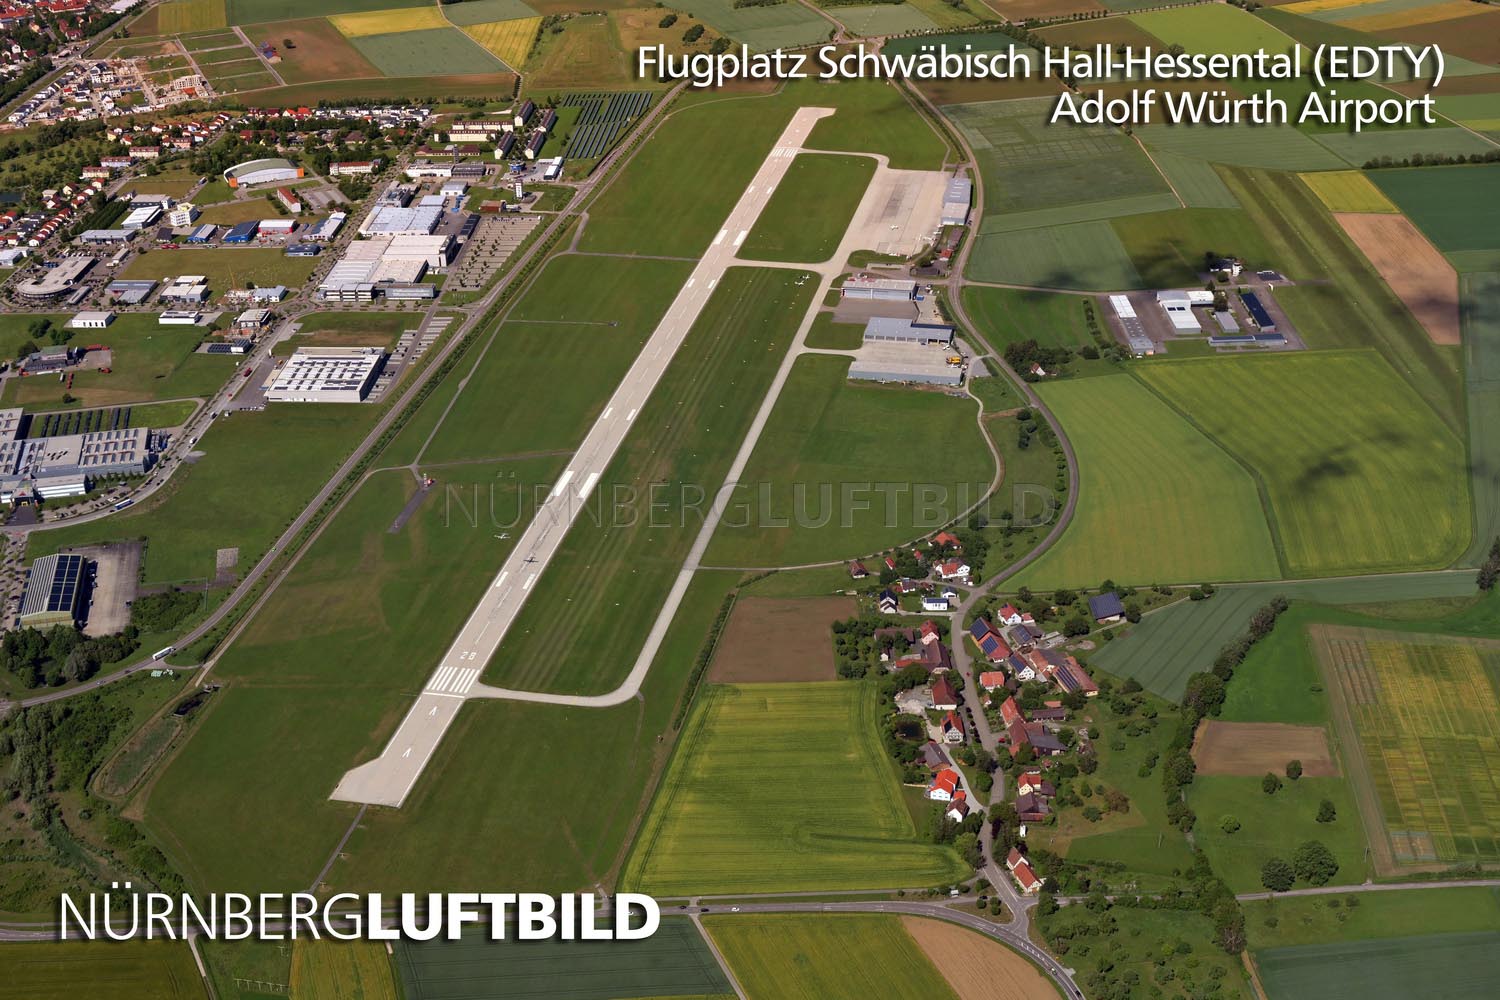 Flugplatz Schwäbisch Hall-Hessental (EDTY), Adolf Würth Airport